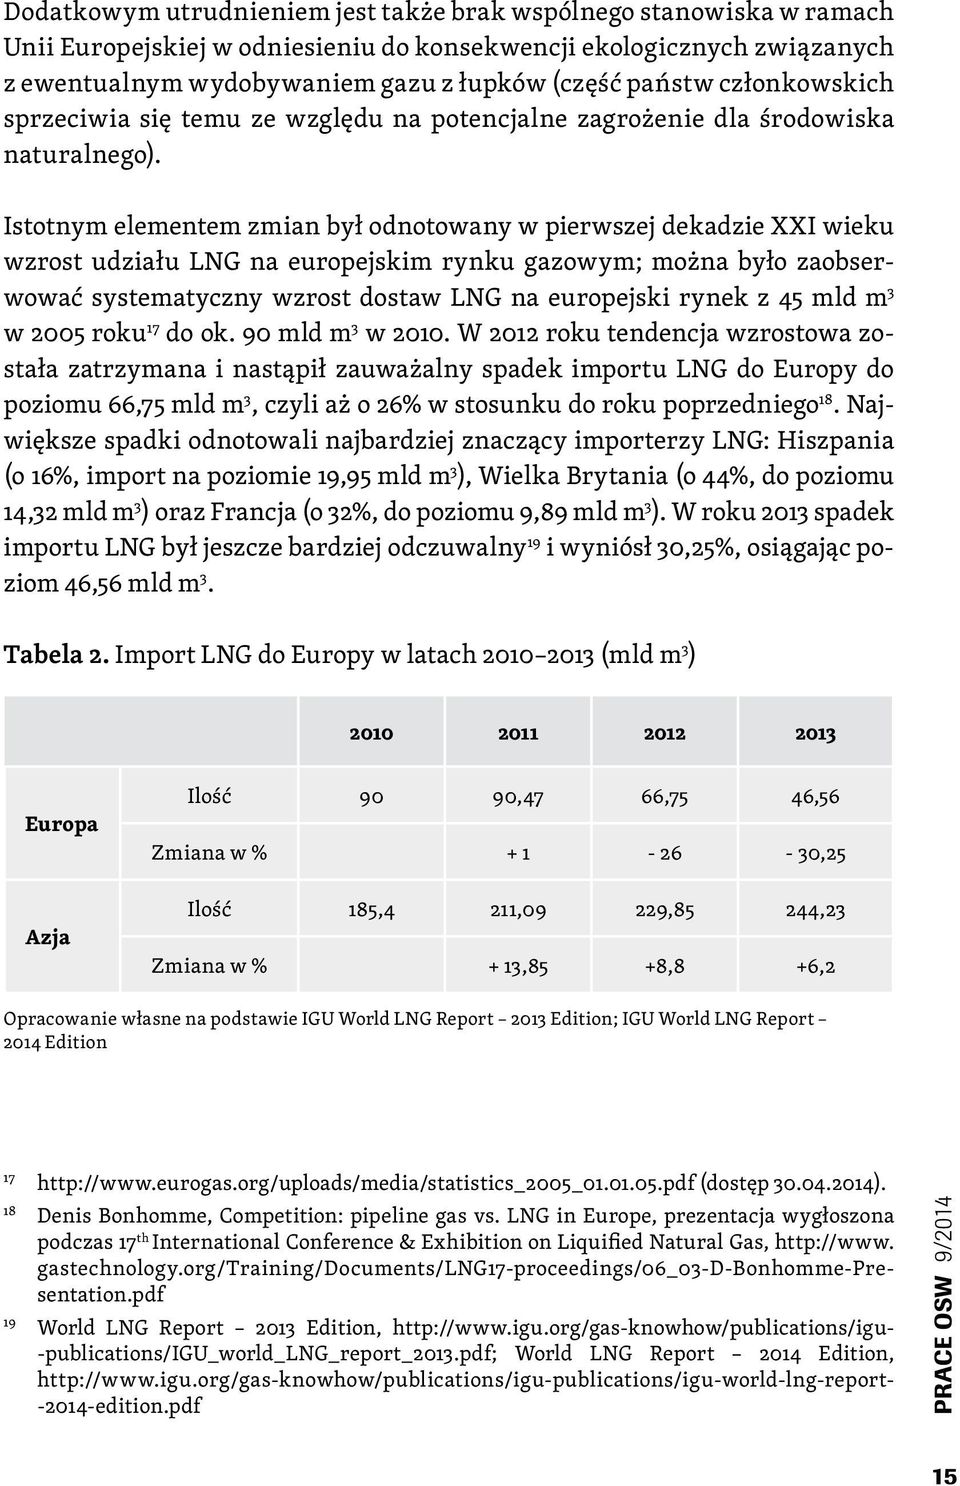 Istotnym elementem zmian był odnotowany w pierwszej dekadzie XXI wieku wzrost udziału LNG na europejskim rynku gazowym; można było zaobserwować systematyczny wzrost dostaw LNG na europejski rynek z